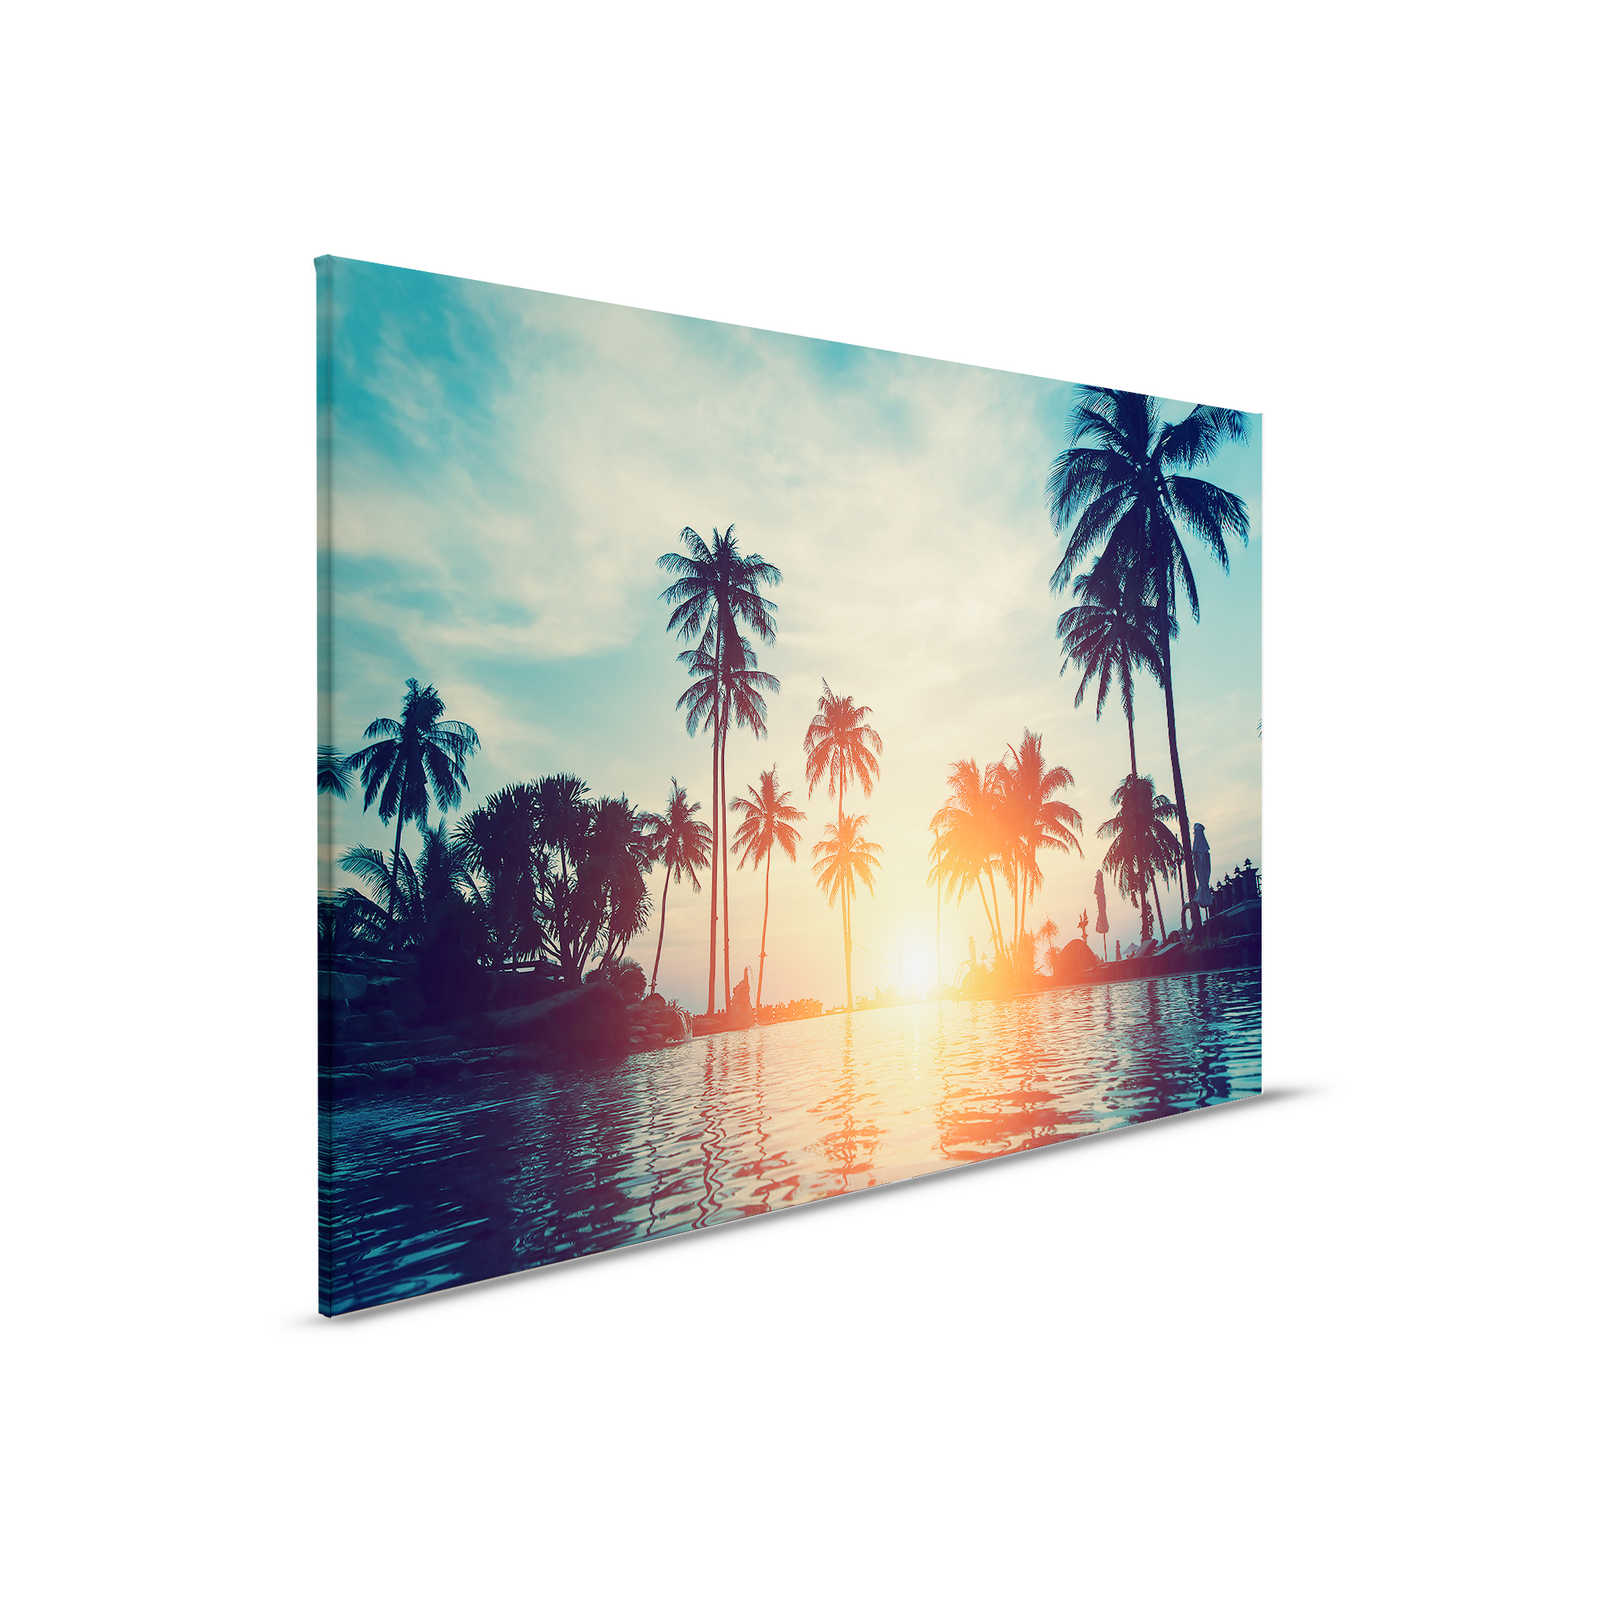         Leinwandbild mit Palmen am Wasser im Sonnenuntergang – 0,90 m x 0,60 m
    